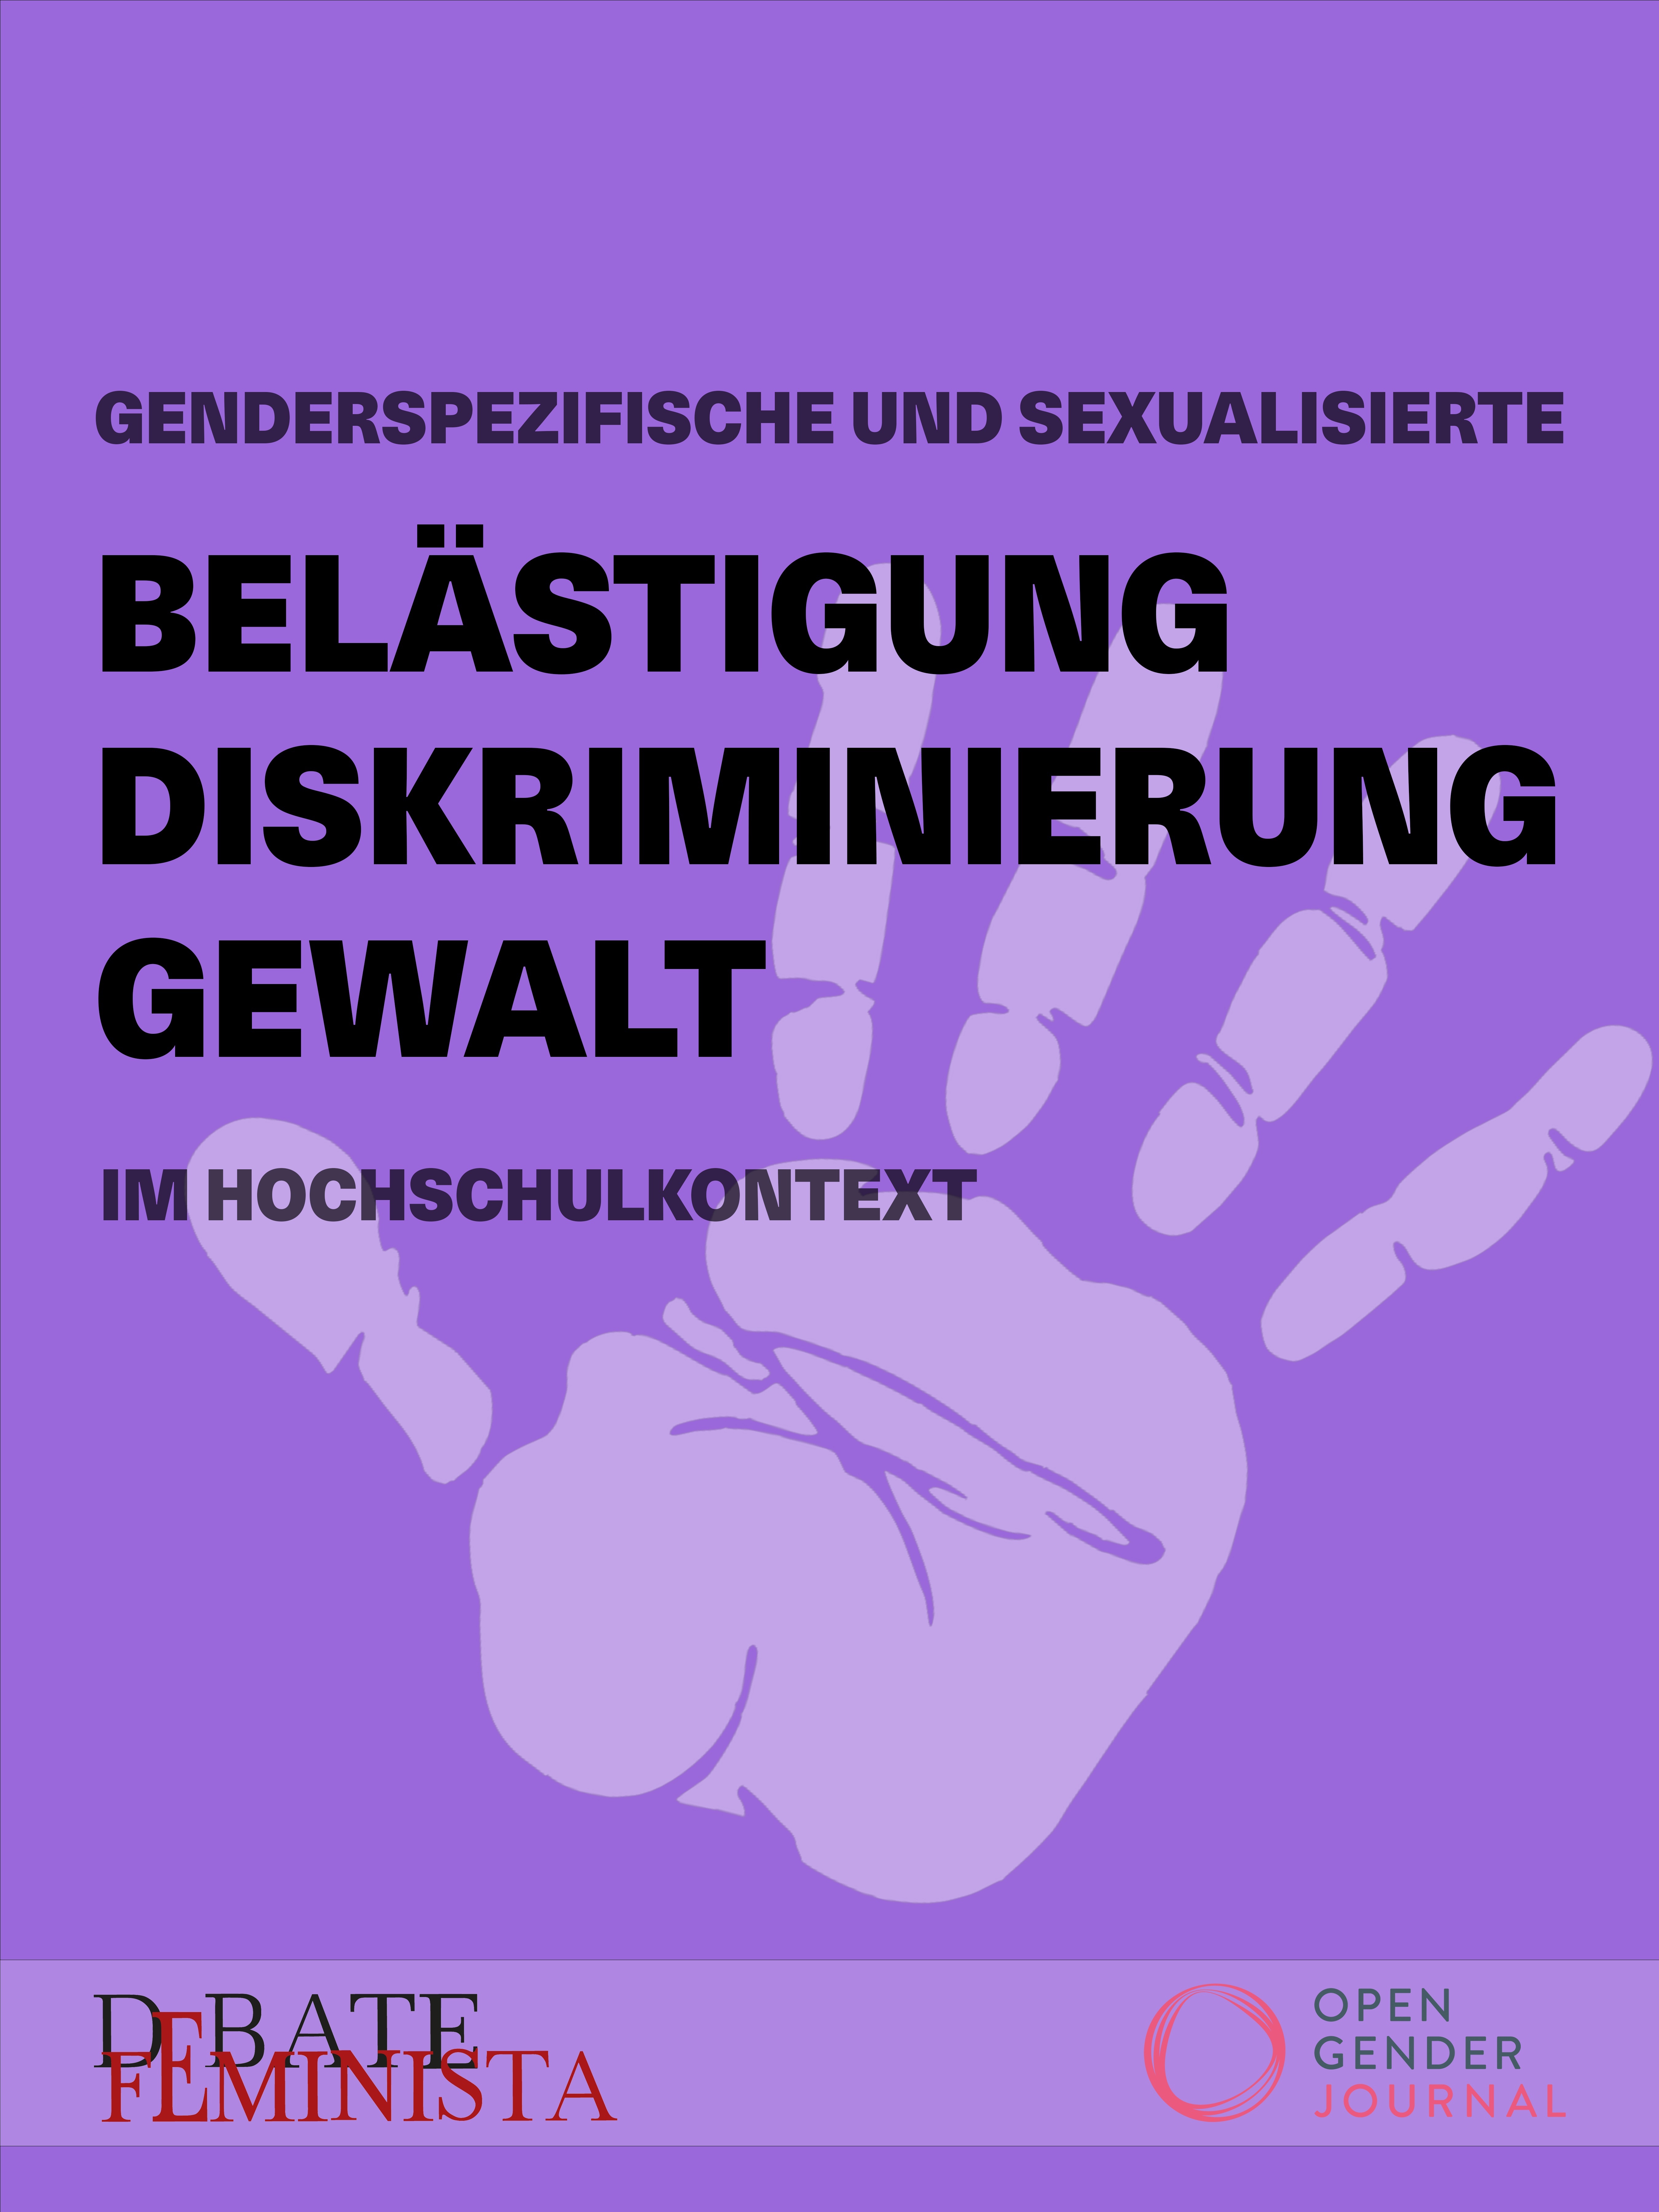 Cover: White hand on purple background, text: "Genderspezifische und sexualisierte Belästigung, Diskriminierung, Gewalt im Hochschulkontext (Gender-specific and Sexual Harassment, Discrimination and Violence in Higher Education Contexts)" 